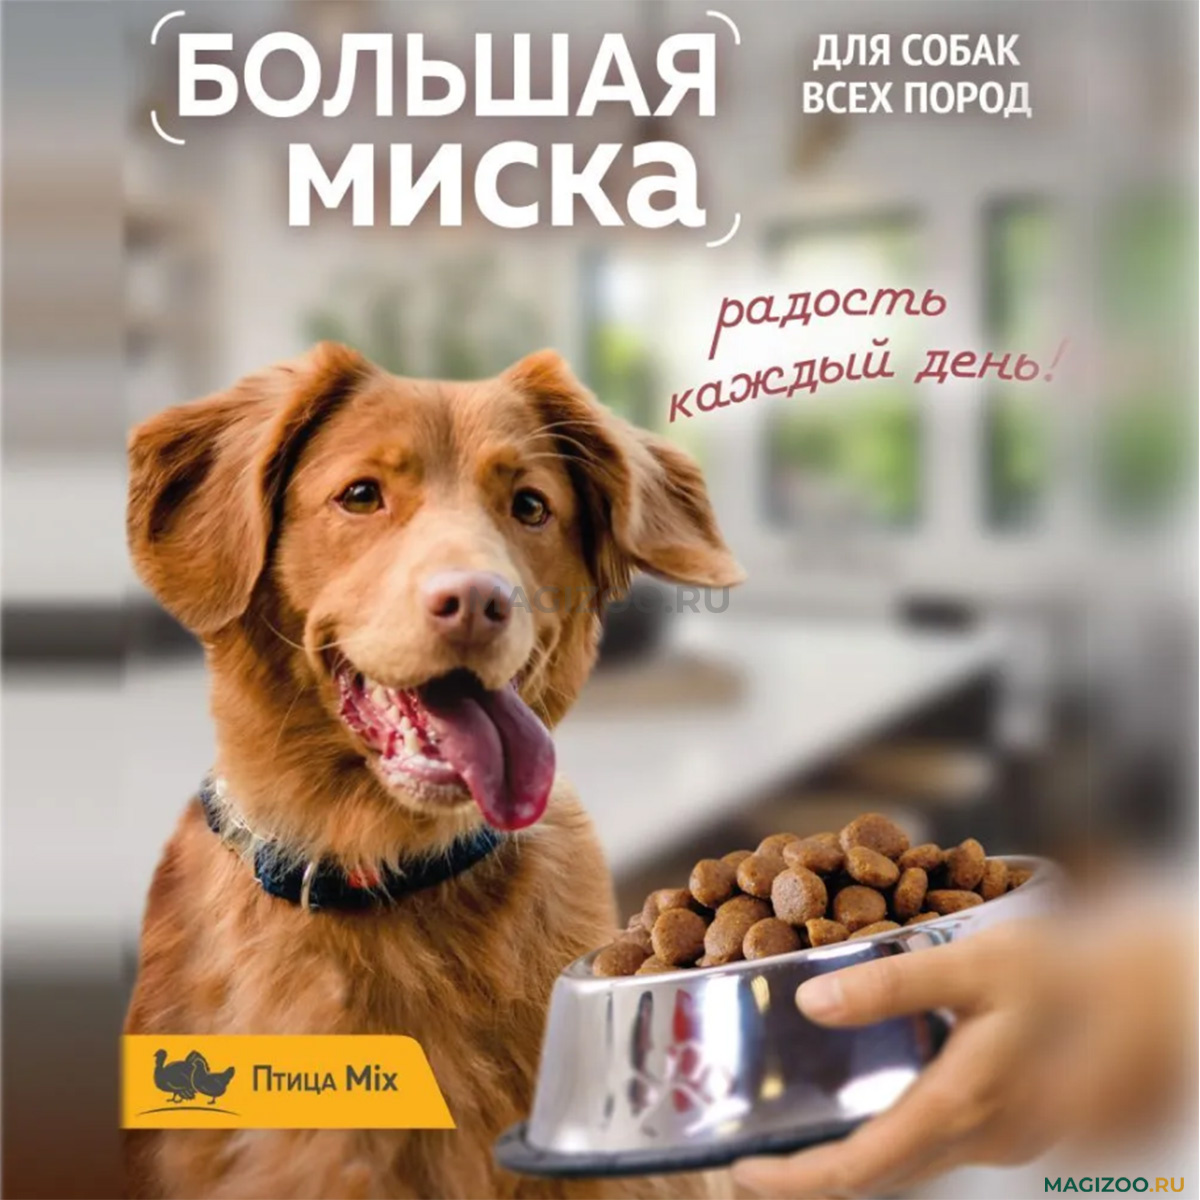 Сухой корм БОЛЬШАЯ МИСКА для взрослых собак всех пород с птицей Mix (15 кг)  — купить за 3 005 ₽, быстрая доставка из интернет-магазина по Москве